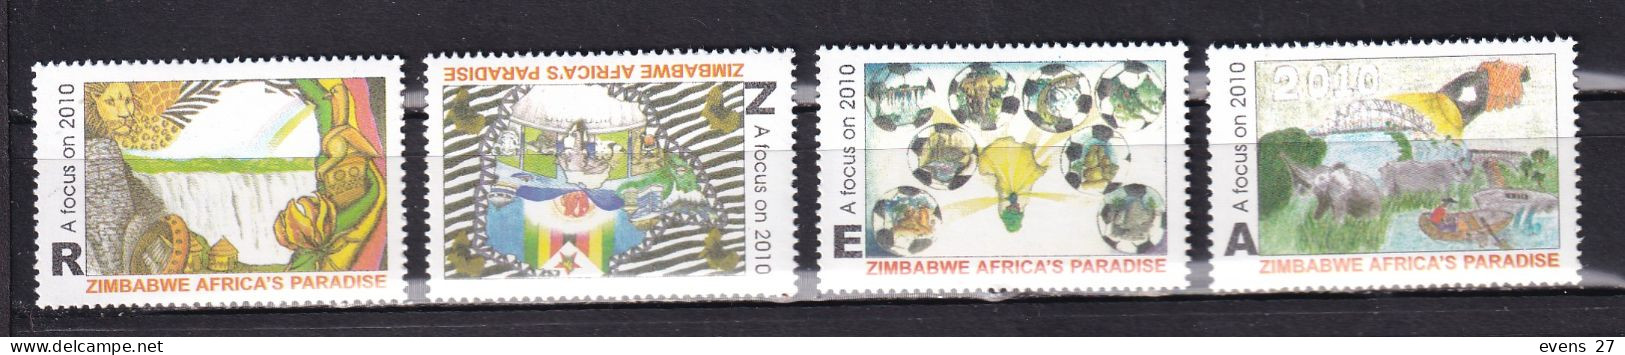 ZIMBABWE-2010-TOURISM-MNH - Zimbabwe (1980-...)